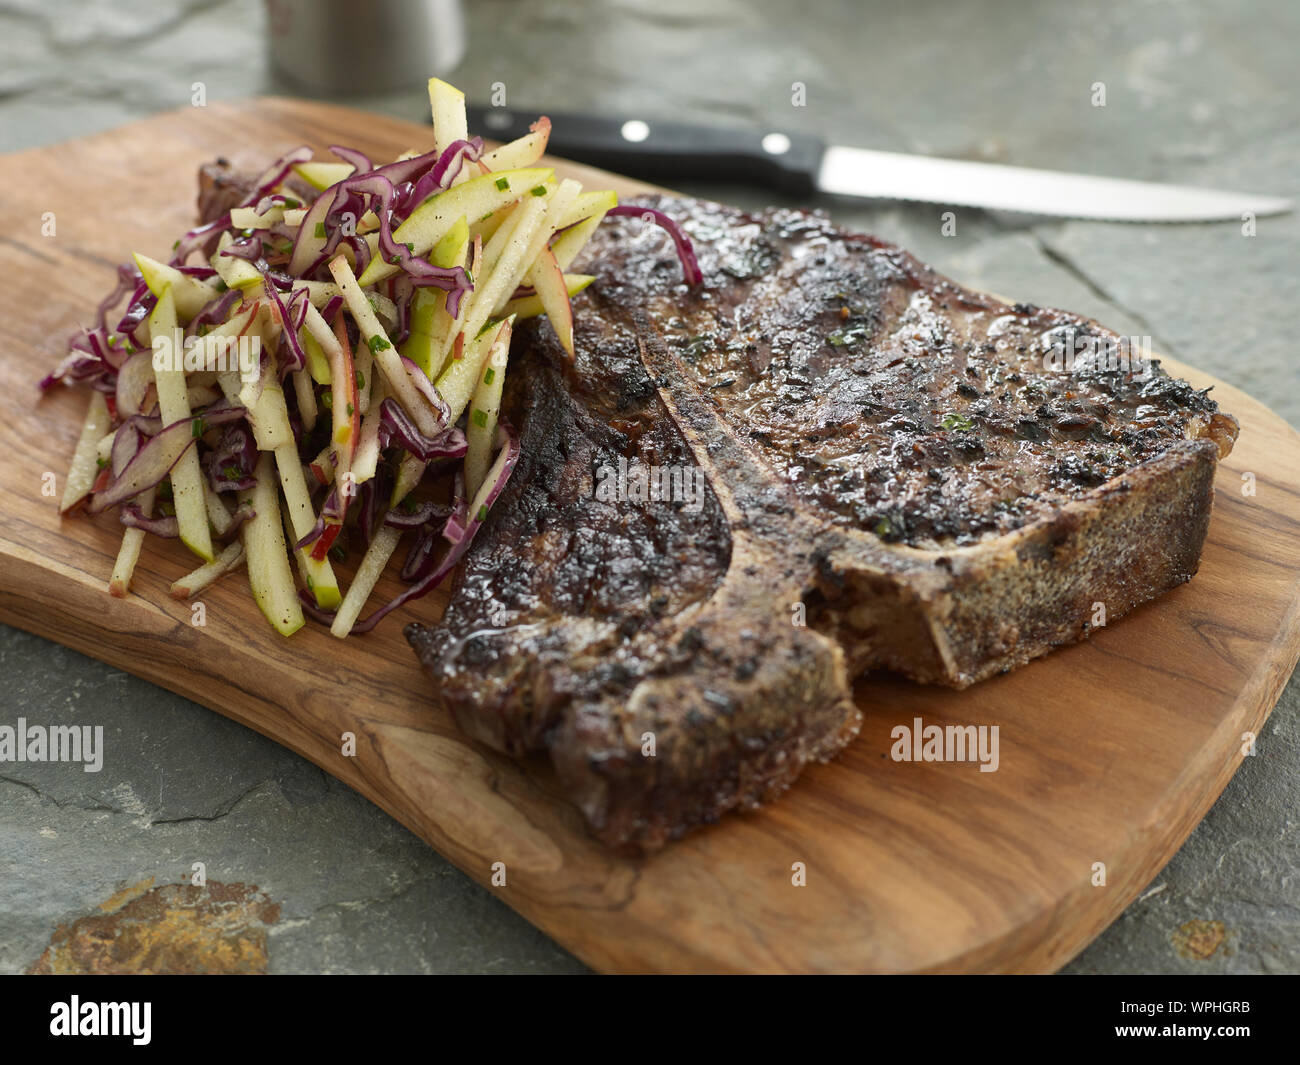 T bone steak and slaw Stock Photo